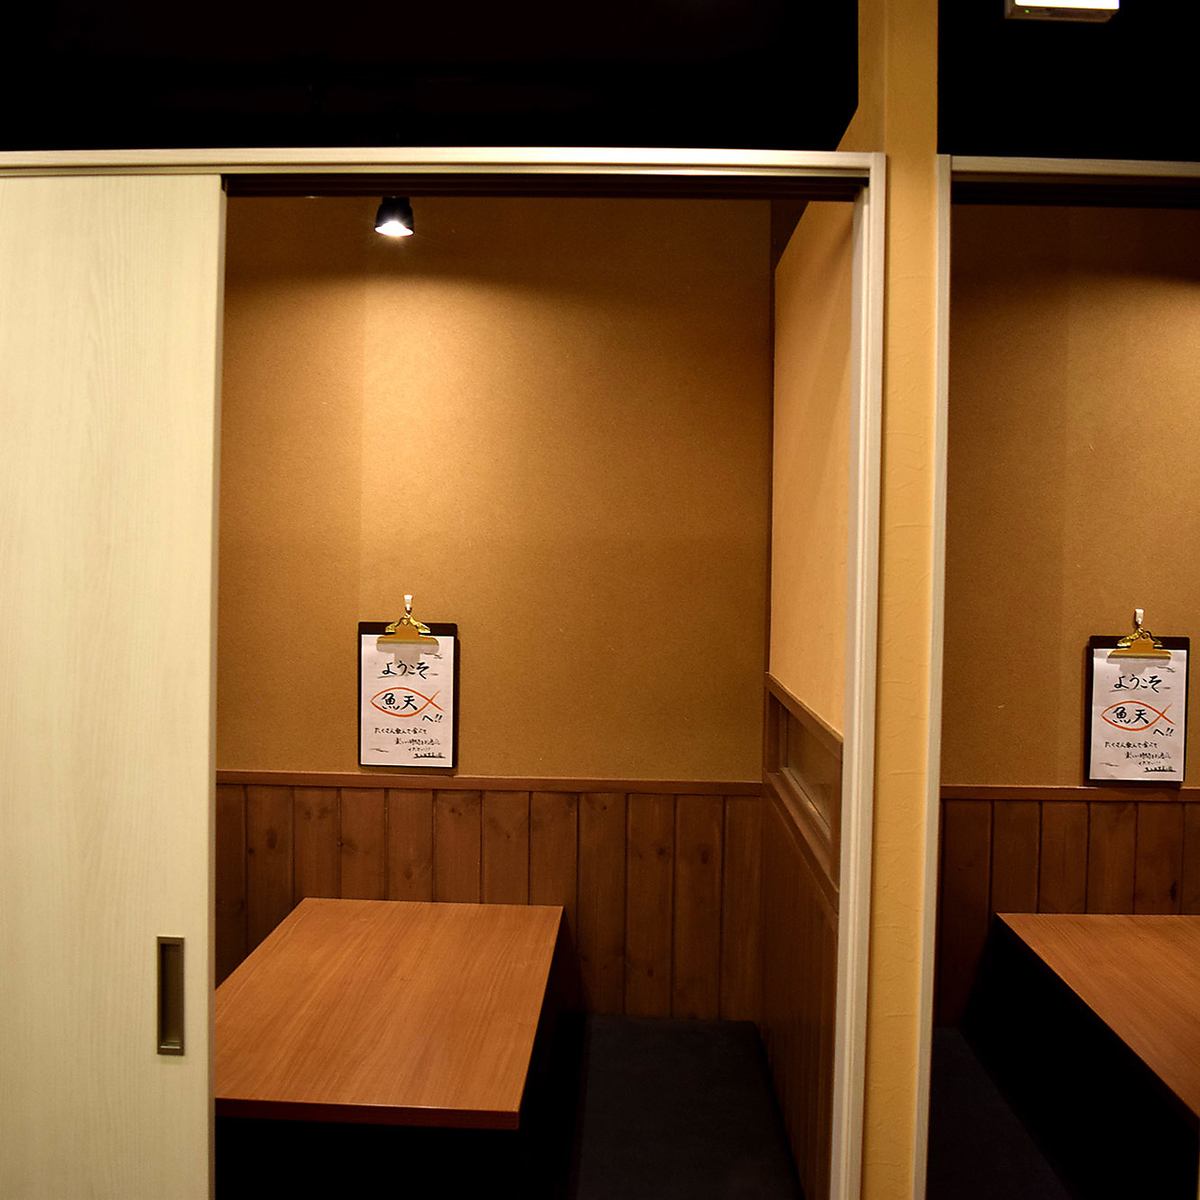 [完全的私人房间空间]最适合在私人空间举办酒会的餐厅◎